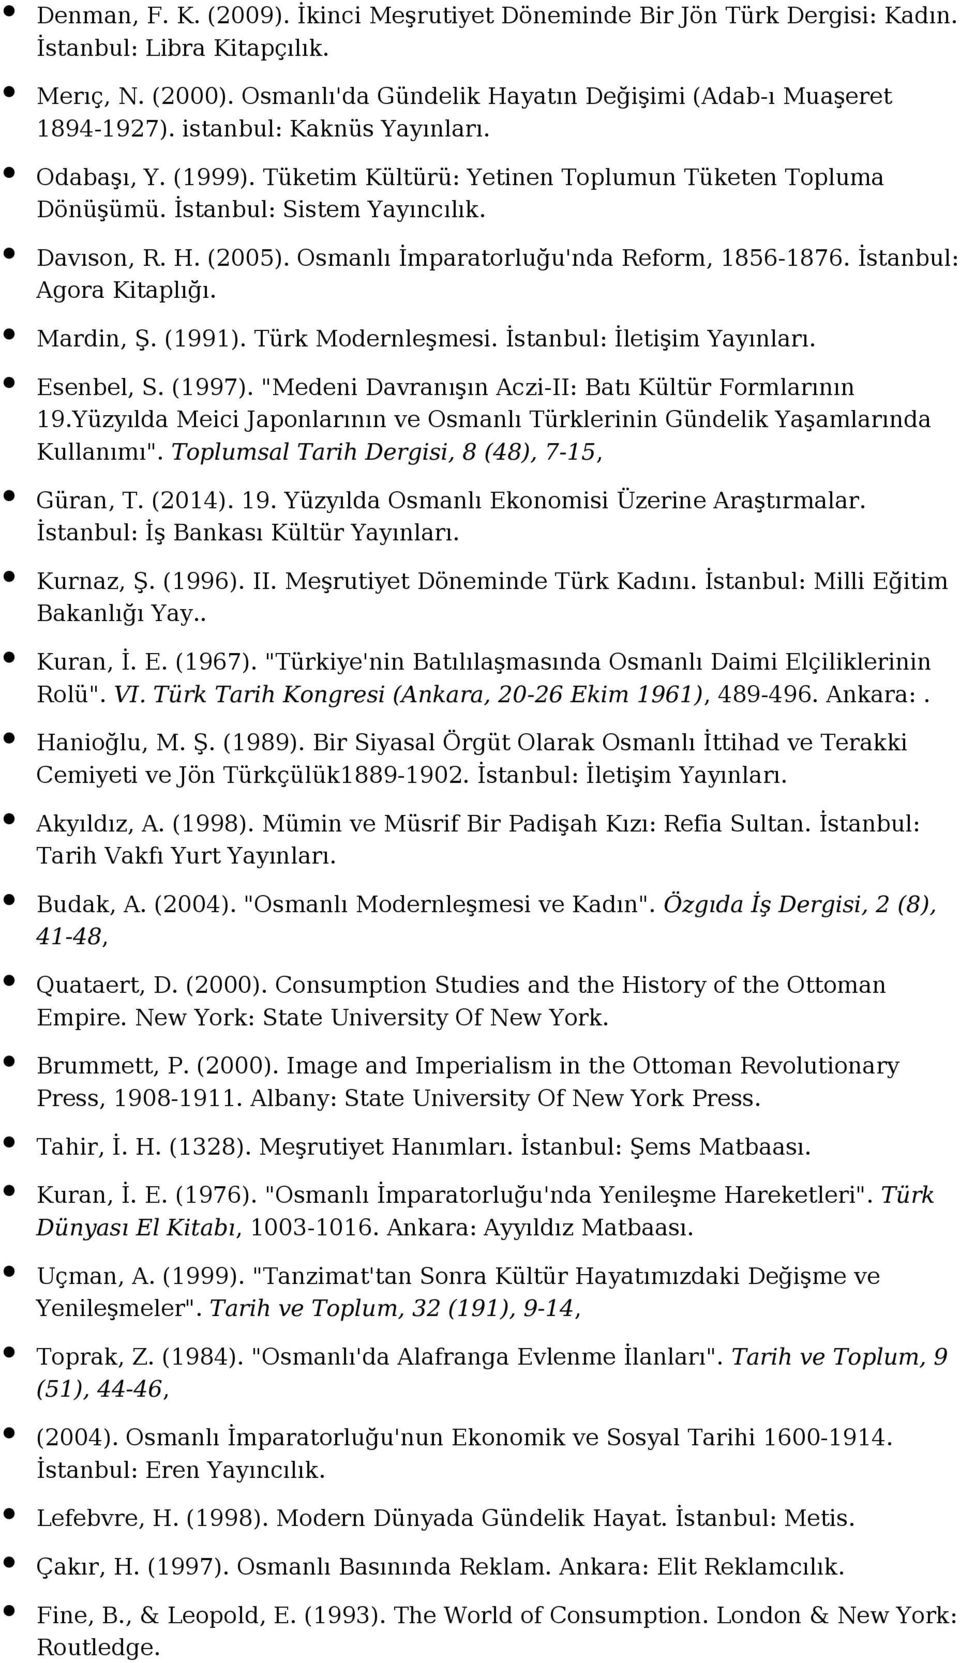 İstanbul: Agora Kitaplığı. Mardin, Ş. (1991). Türk Modernleşmesi. İstanbul: İletişim Esenbel, S. (1997). "Medeni Davranışın Aczi-II: Batı Kültür Formlarının 19.